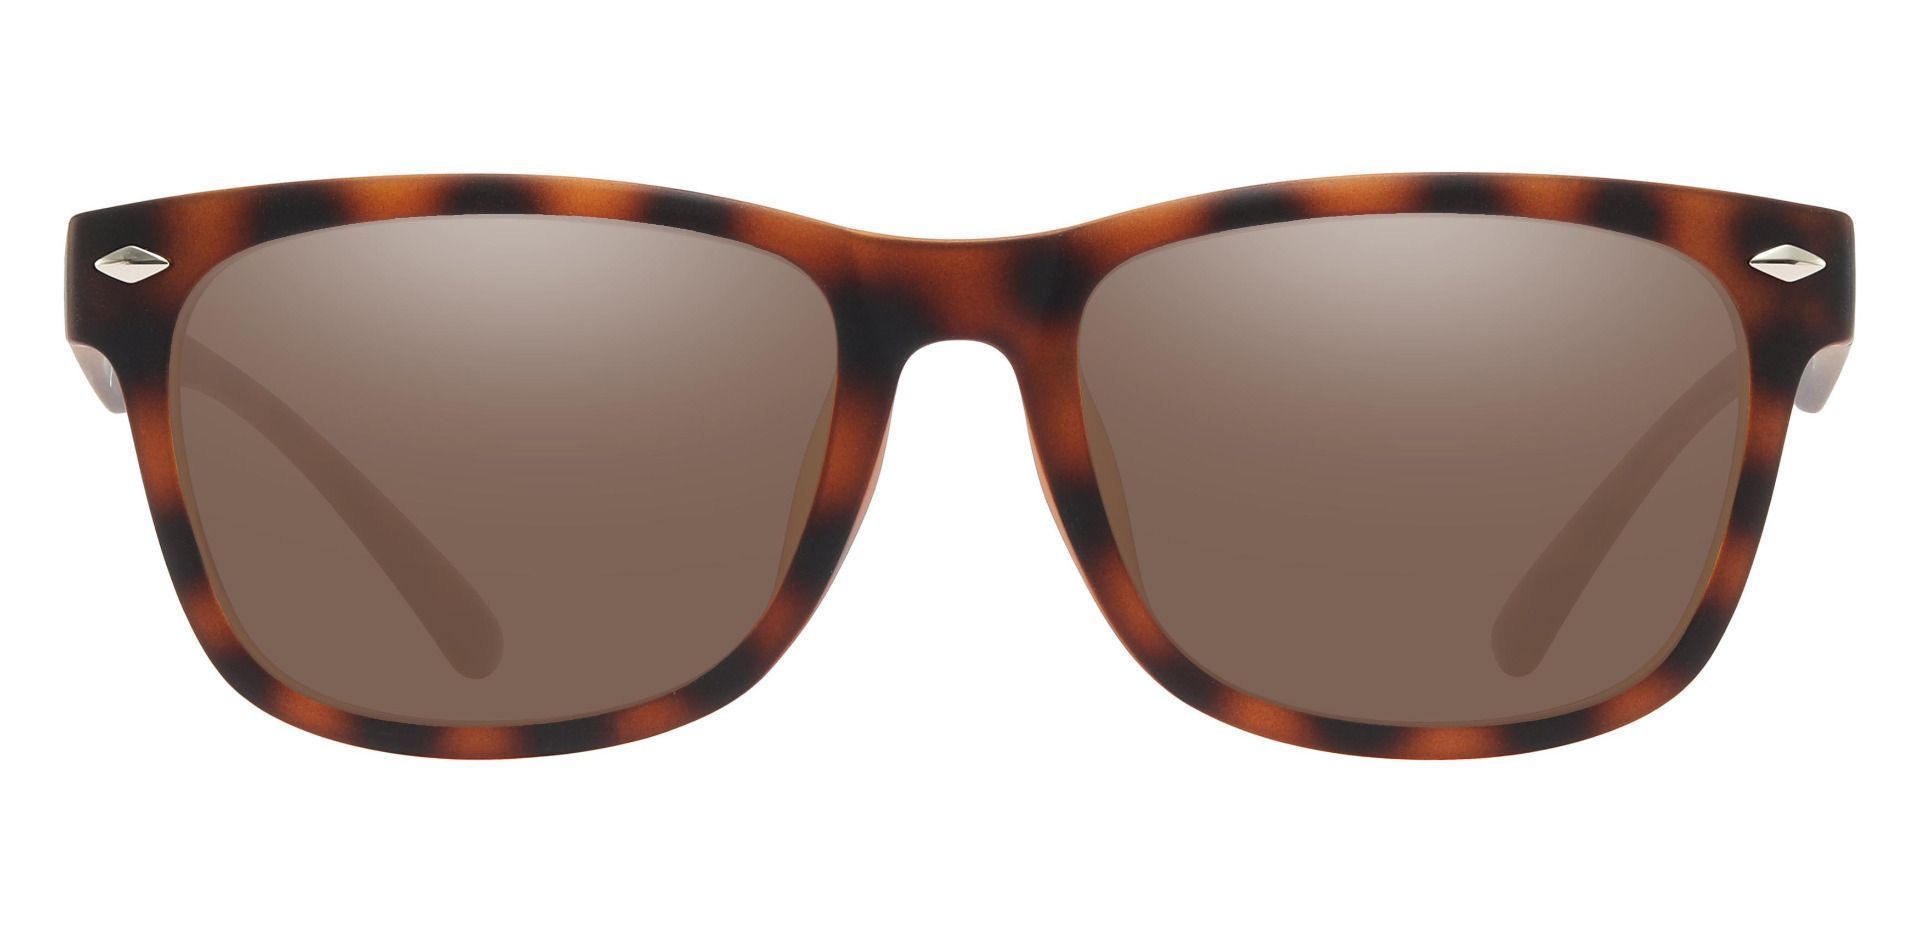 Shaler Square Progressive Sunglasses - Tortoise Frame With Brown Lenses